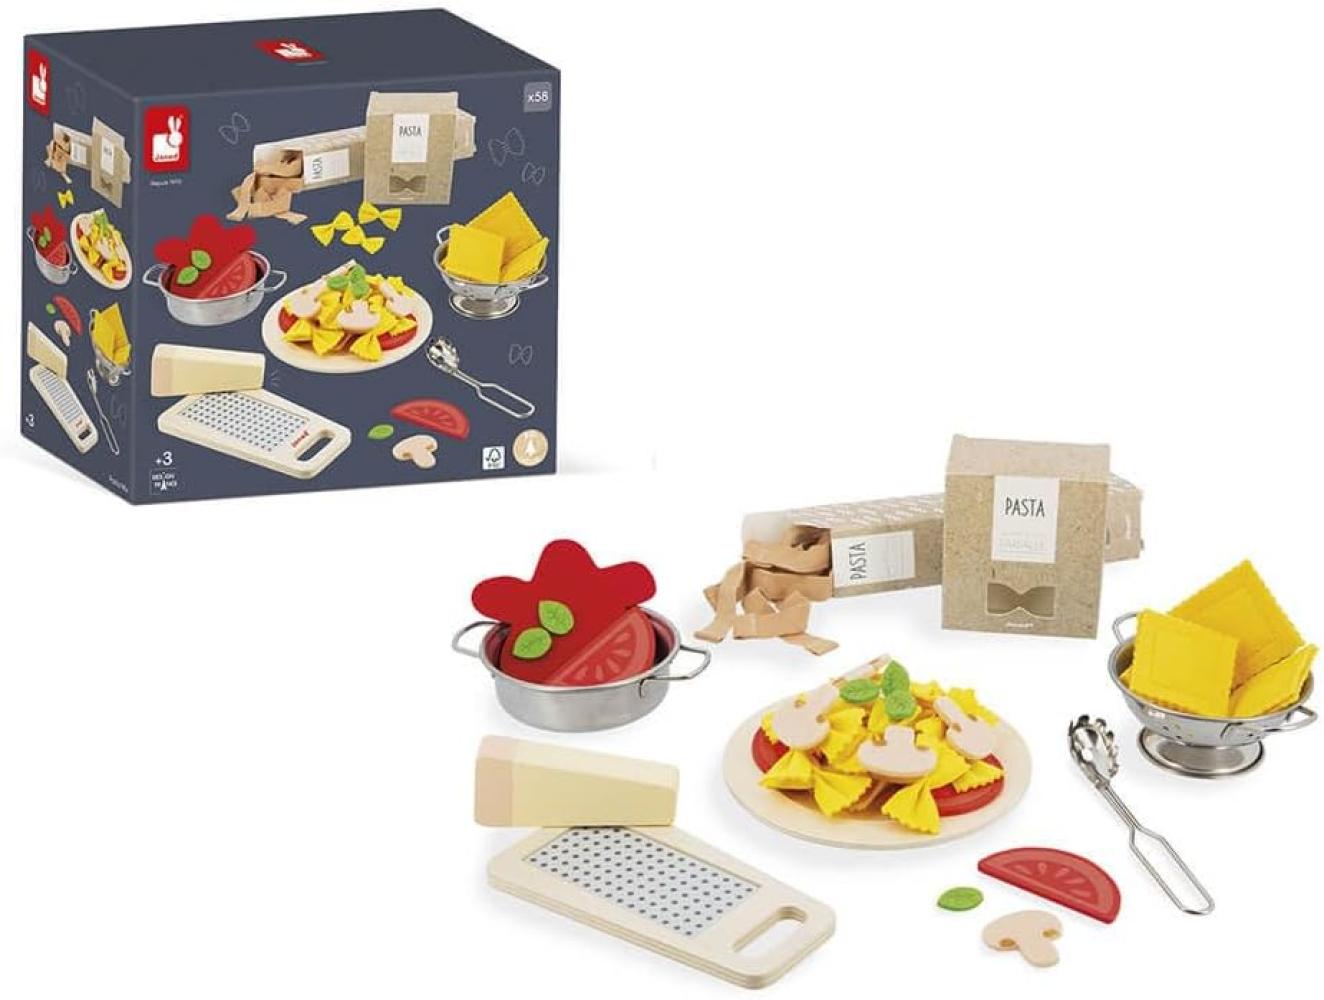 Janod - Pasta-Mix - Nudel-Set- Rollenspielzeug Küche und Essgeschirr - 58 Elemente aus Holz, Pappe und Filz - FSC-zertifiziert - Wasserfarbe - ab 3 Jahre, J06598 Bild 1